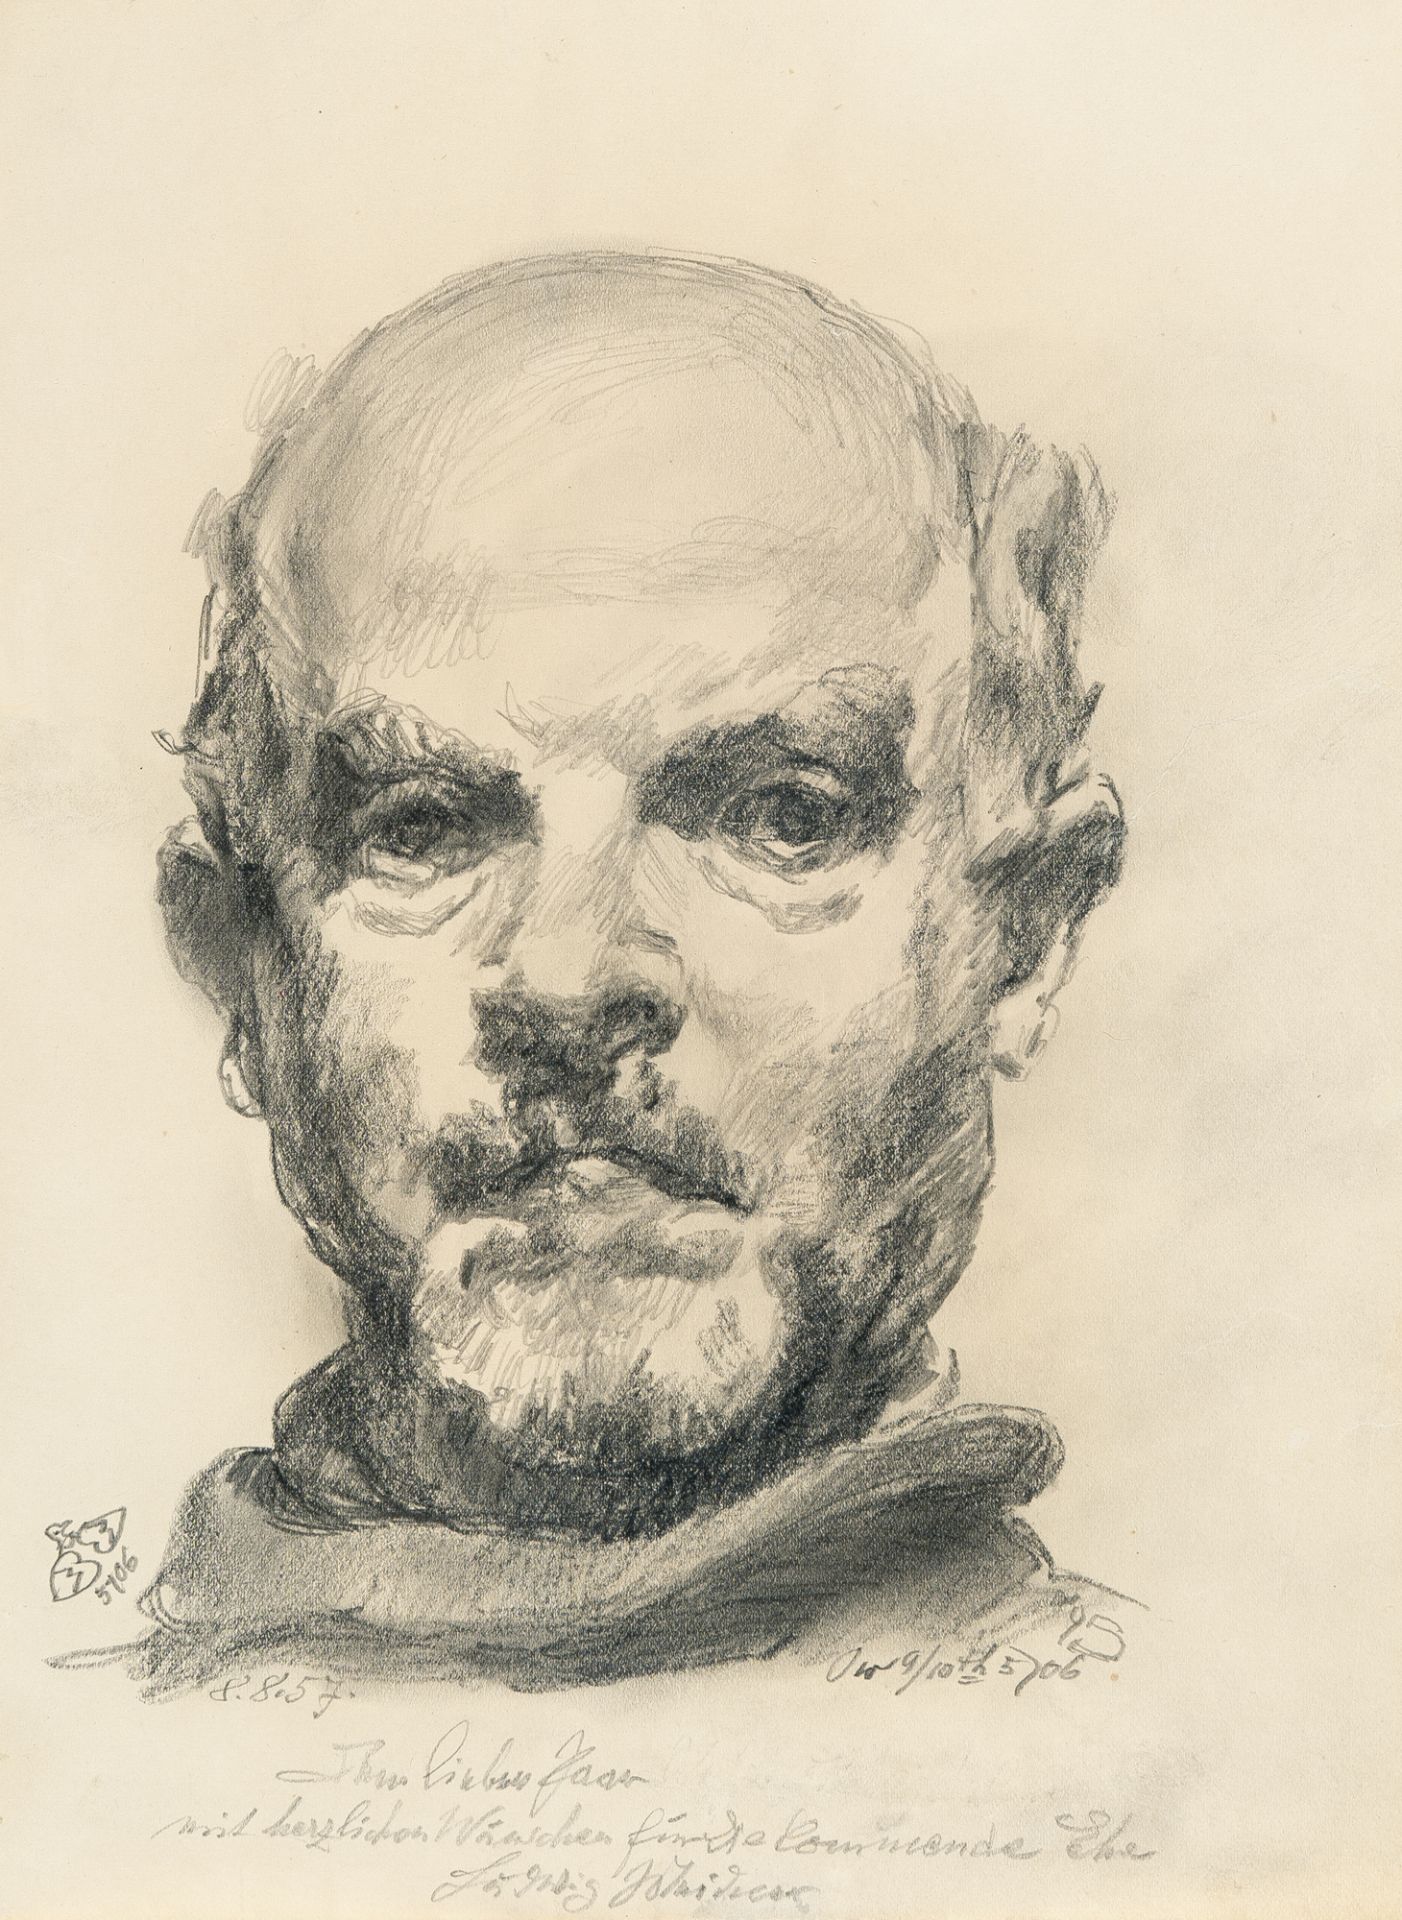 Ludwig Meidner (1884 Bernstadt/Schlesien - Darmstadt 1966), Self portraitPencil on paper. (1946).